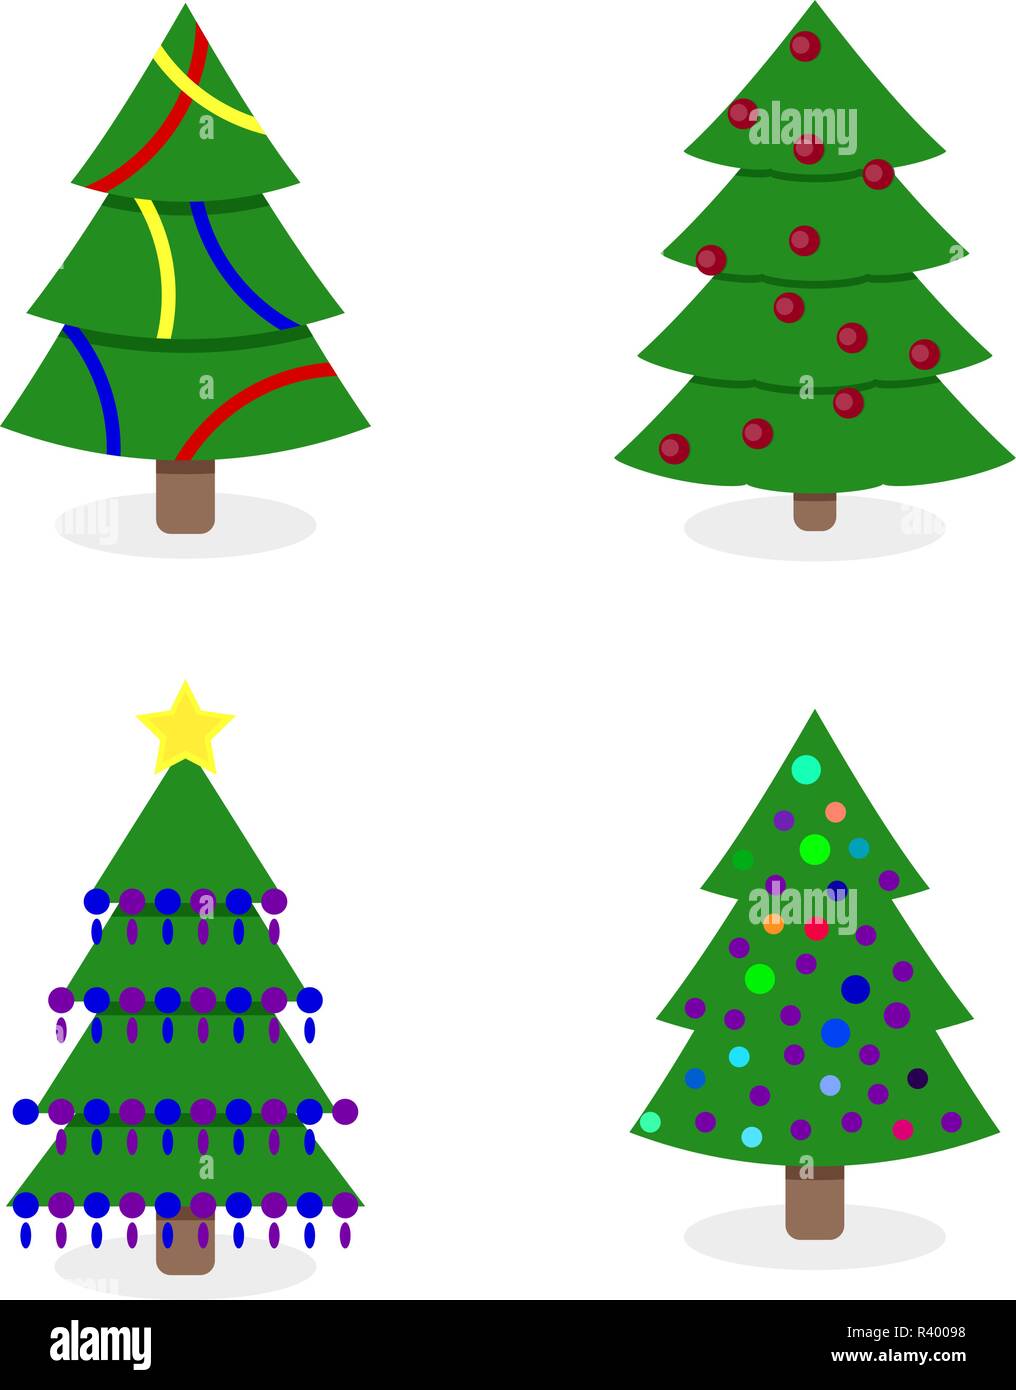 Geschmückten Weihnachtsbaum Sammlung Abbildung. Baum Christbaum Winterurlaub Weihnachten dekoriert, beleuchtete Weihnachtsbaum, Tannenbaum isoliert Stock Vektor